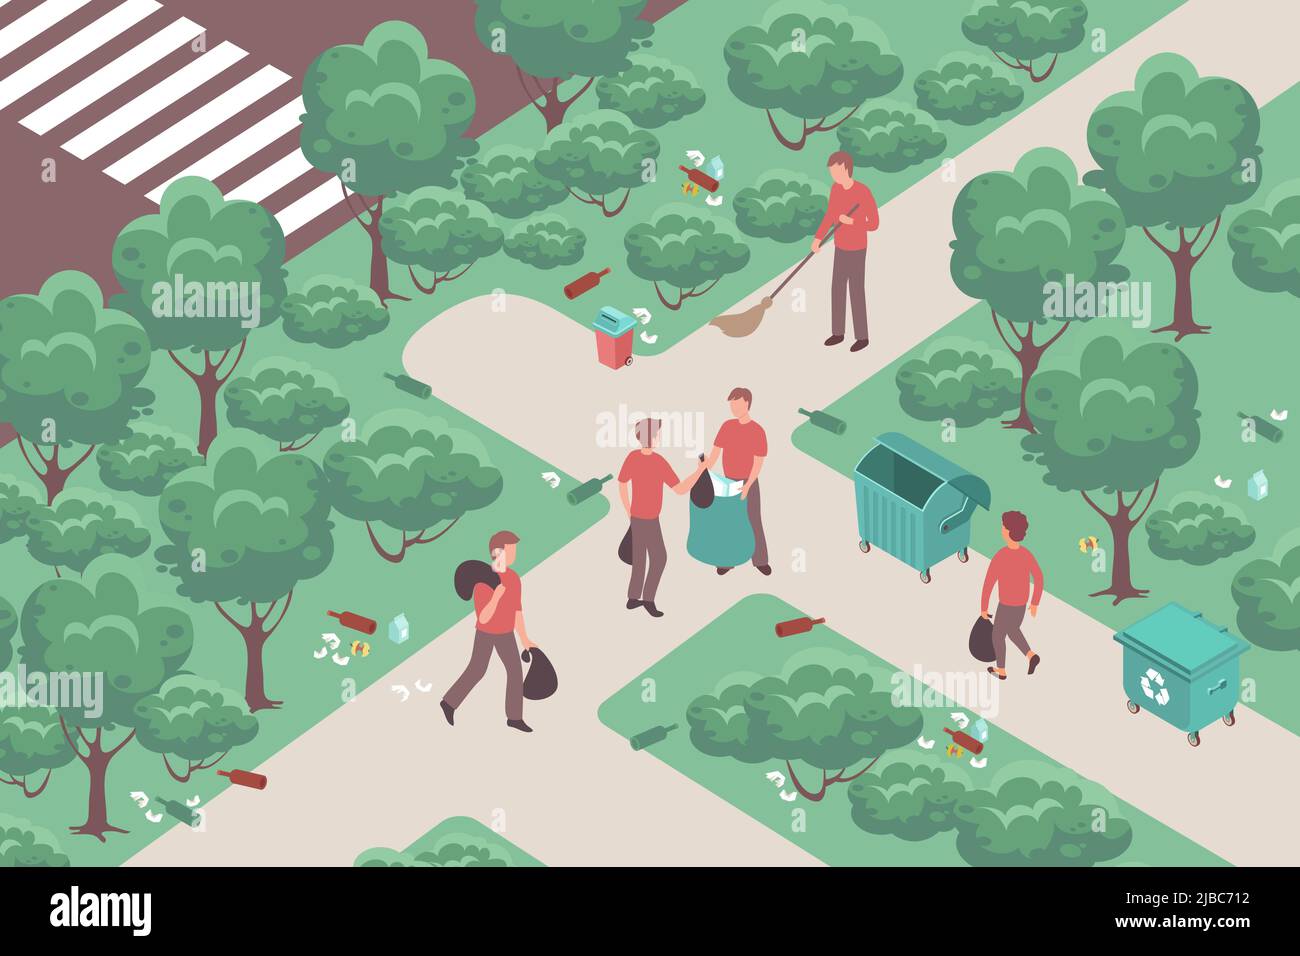 Community Arbeit Hintergrund mit Menschen sammeln Müll und Reinigungspfade im Park 3D isometrische Vektor-Illustration Stock Vektor